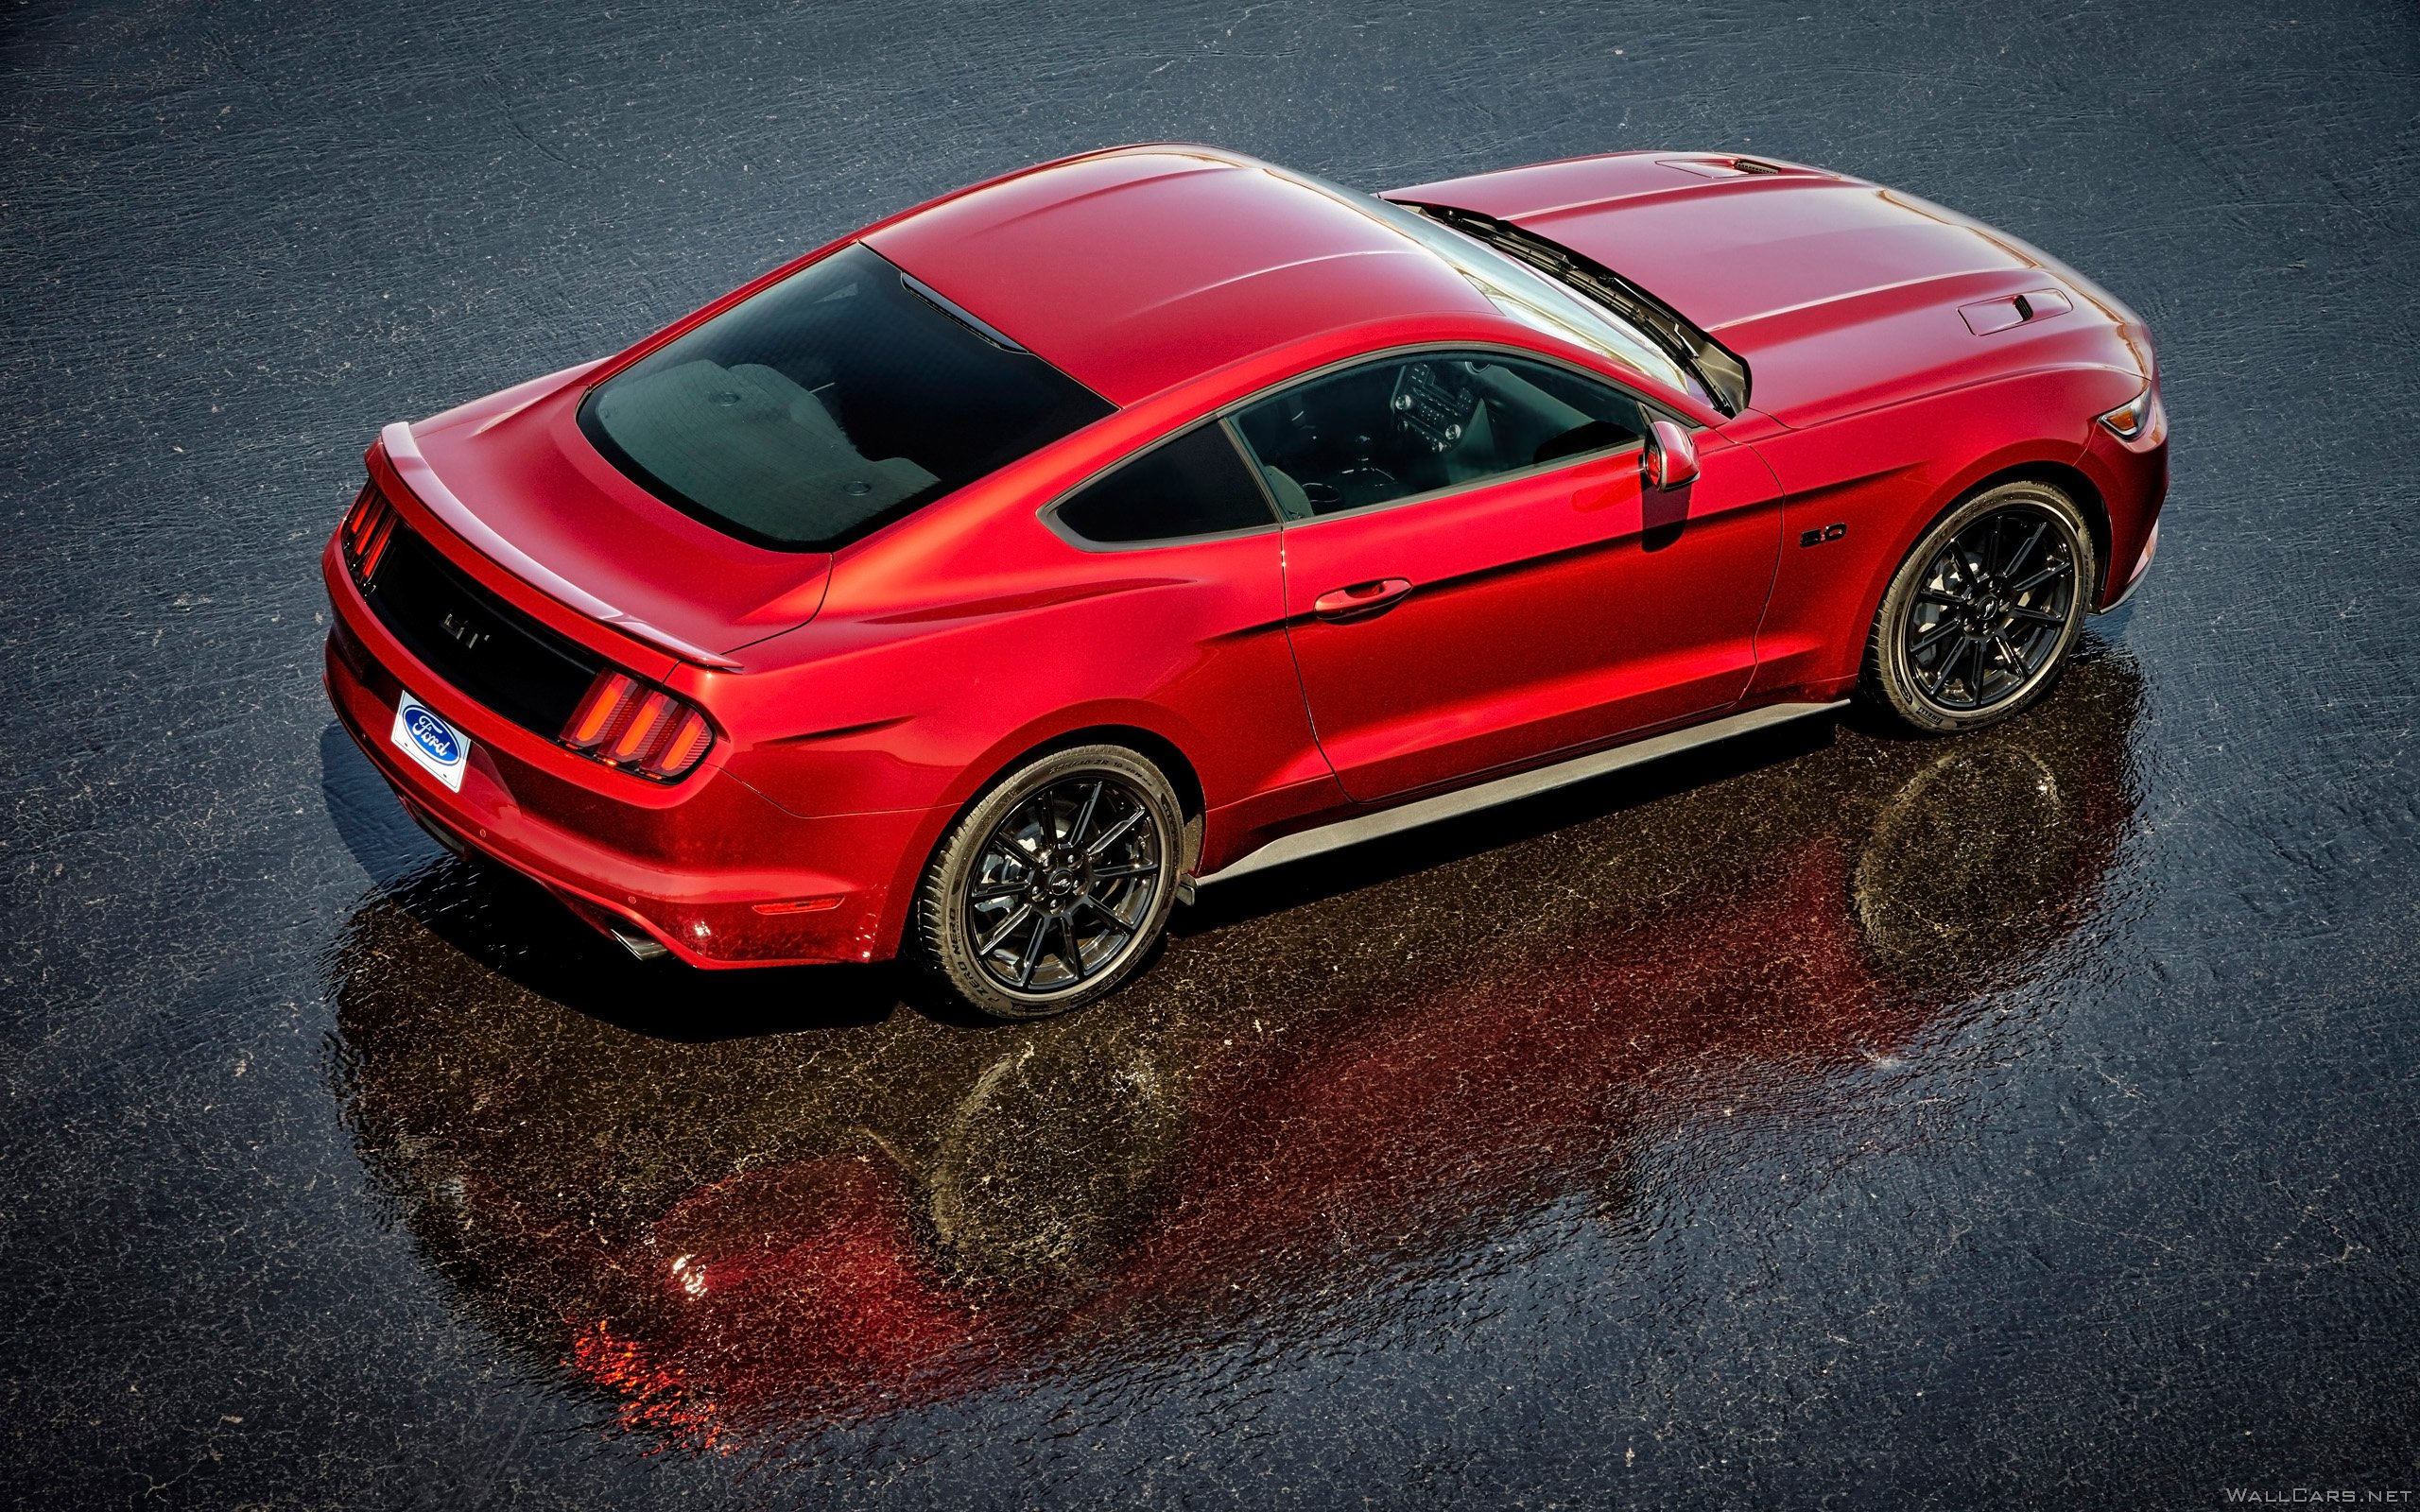 Красный Ford Mustang GT 5.0, 2016, асфальт, отражение, экстерьер, мощность, цвет